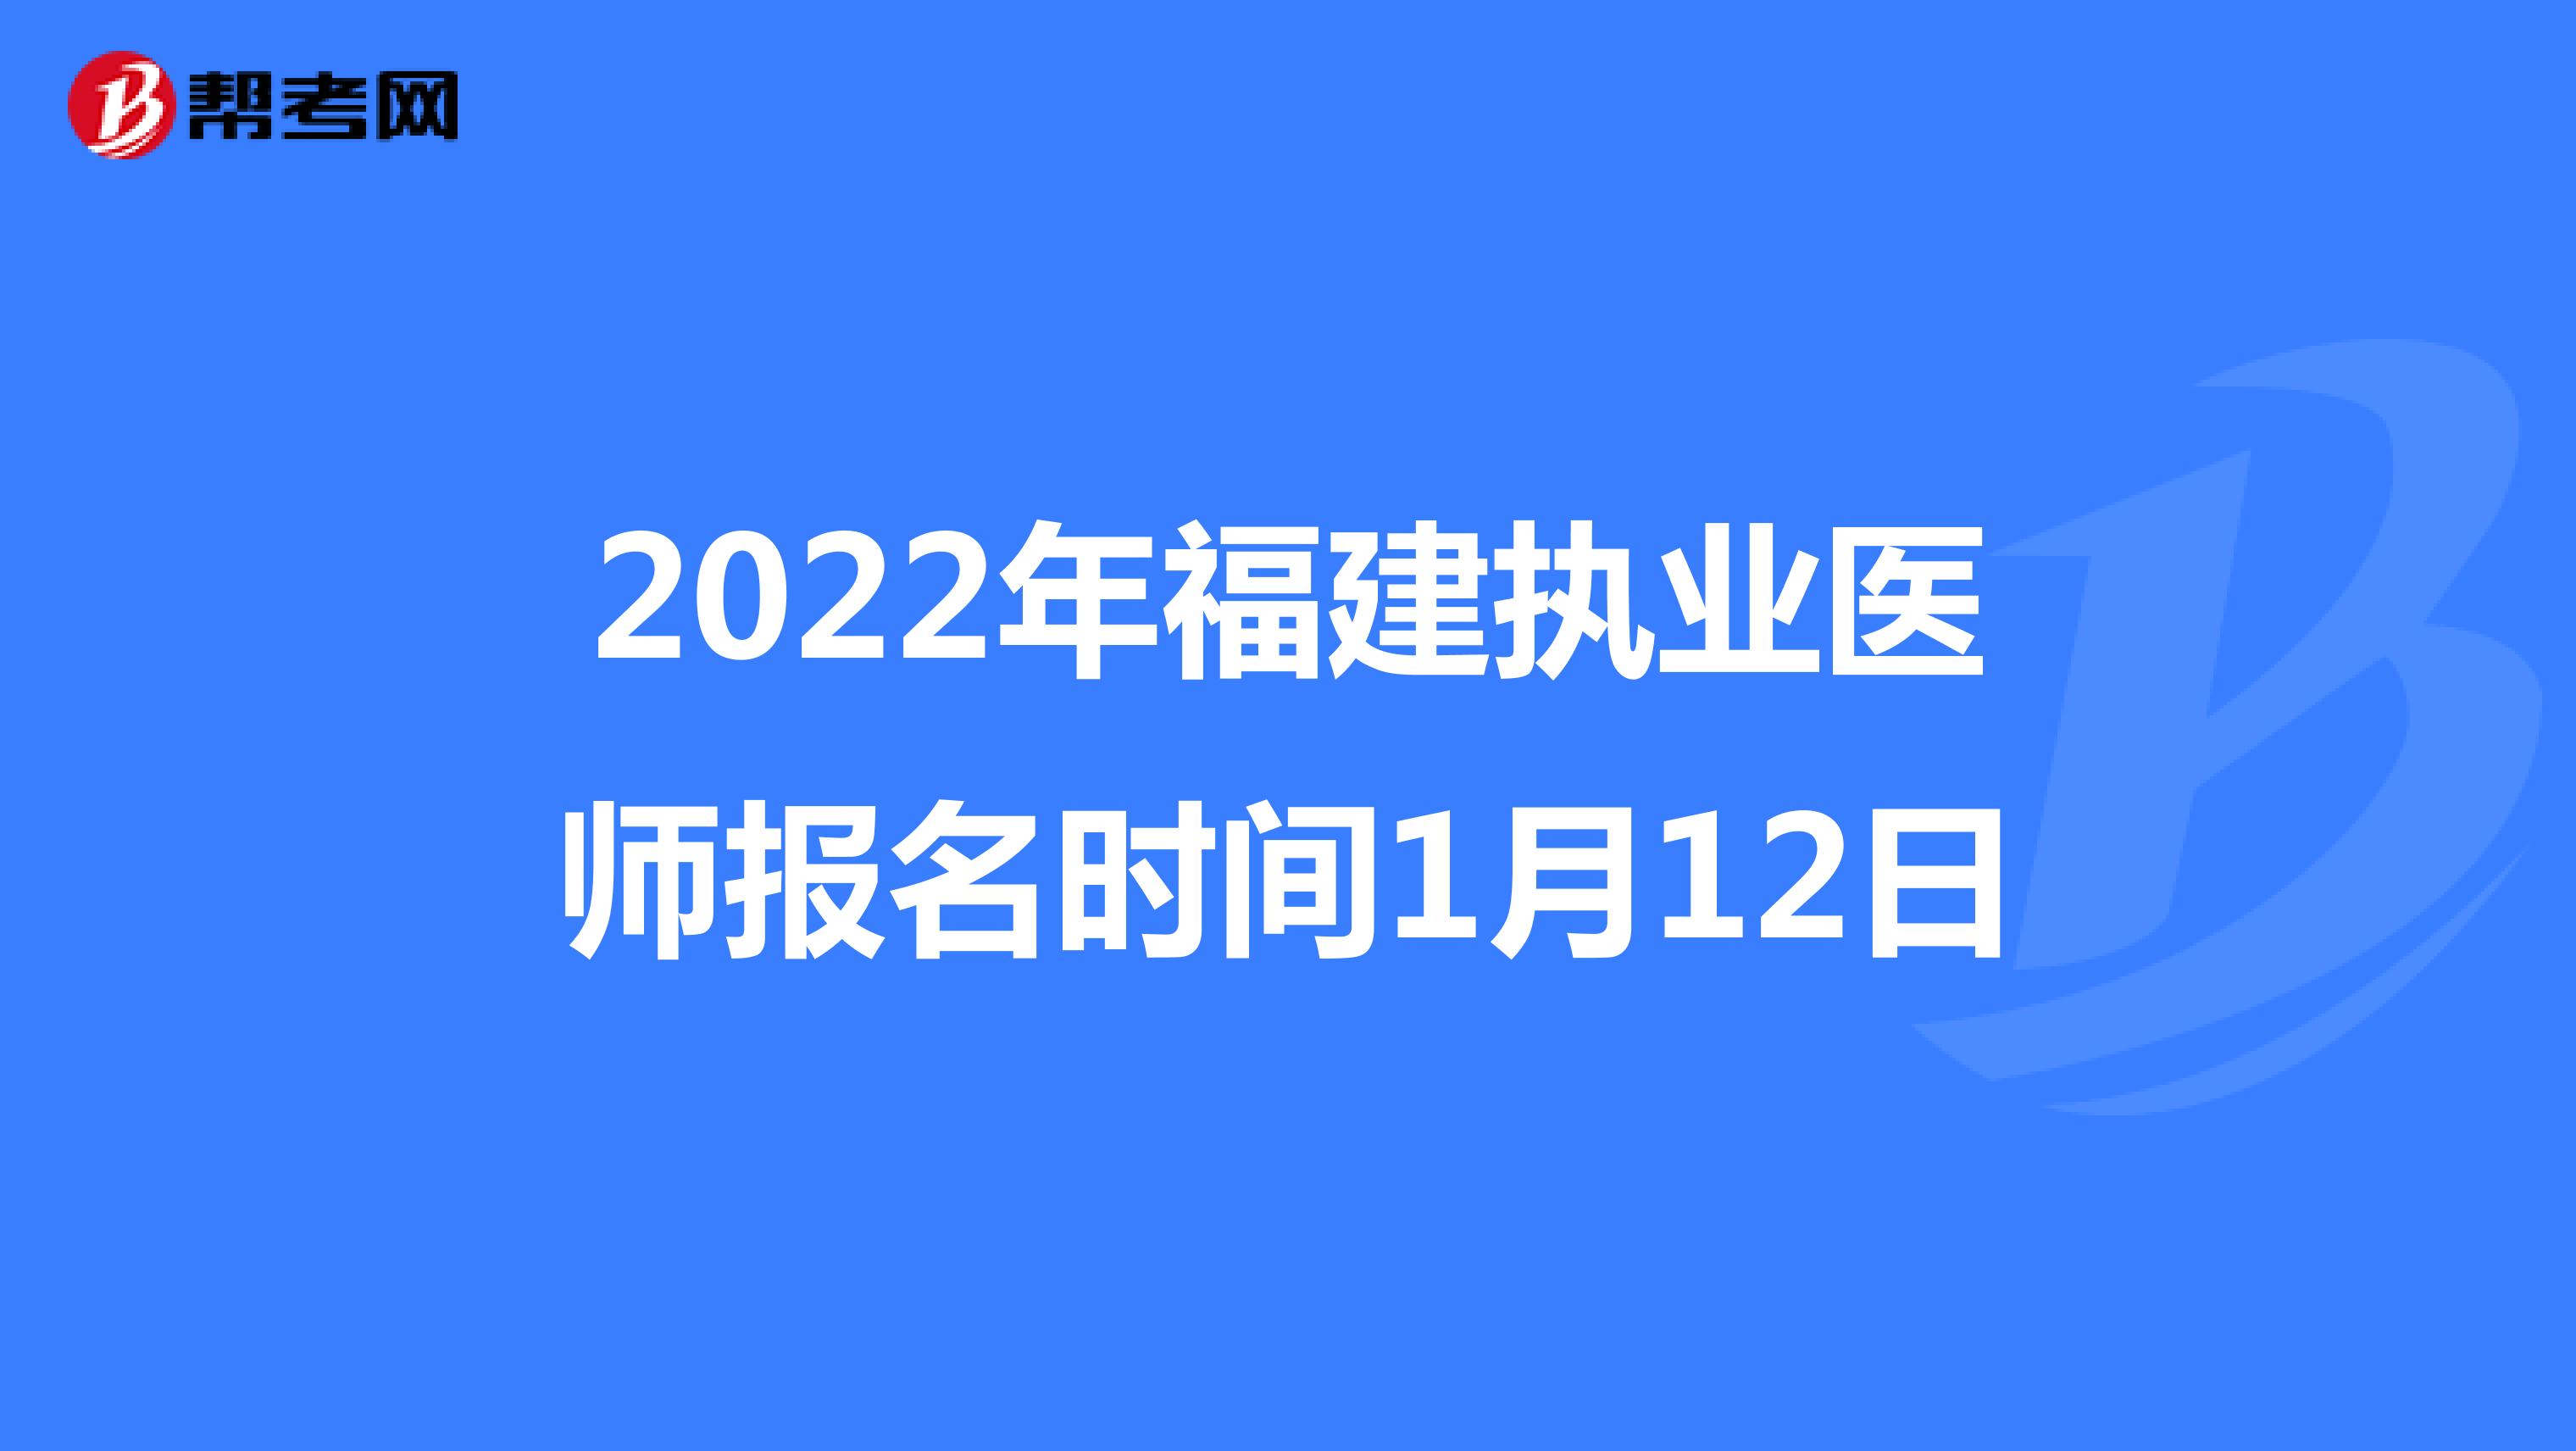 2022年福建执业医师报名时间1月12日